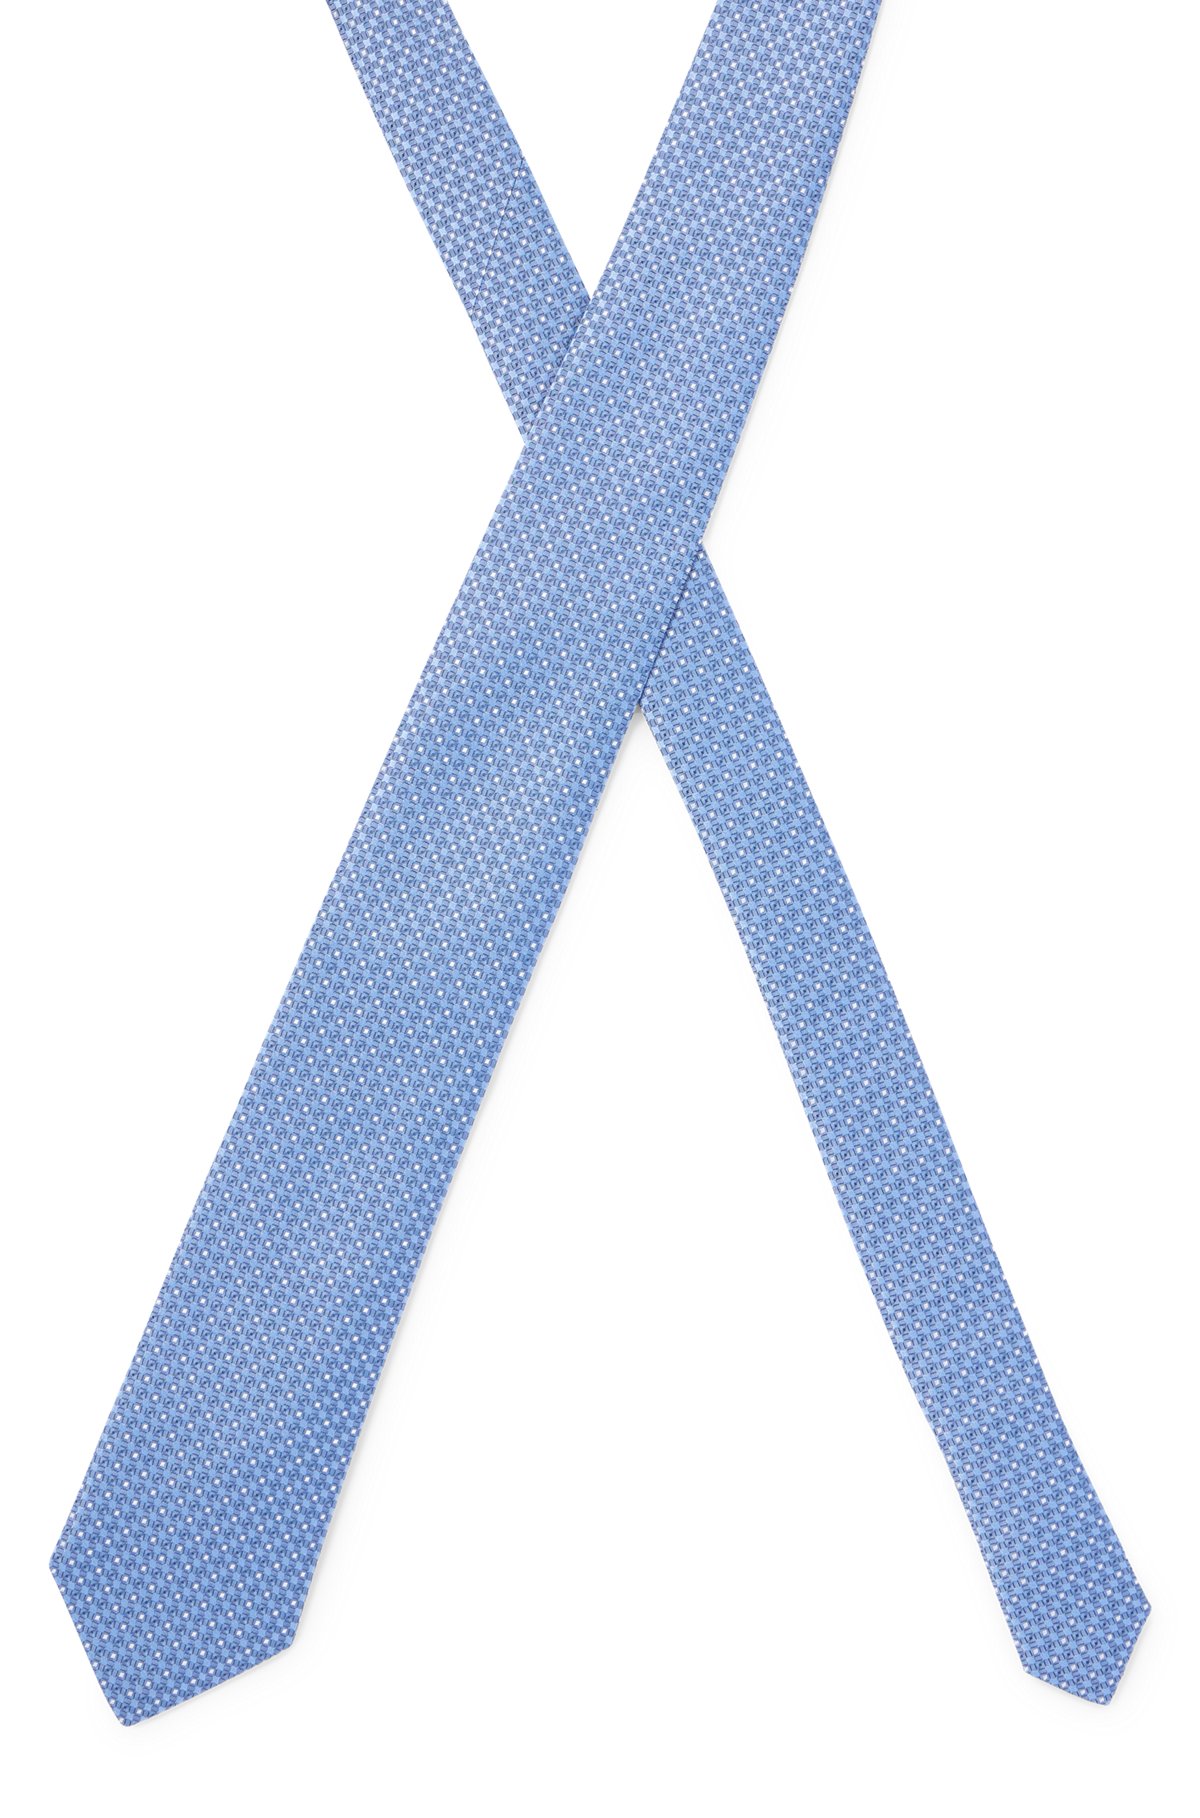 Cravate en soie pure avec micro motif en jacquard tissé, bleu clair